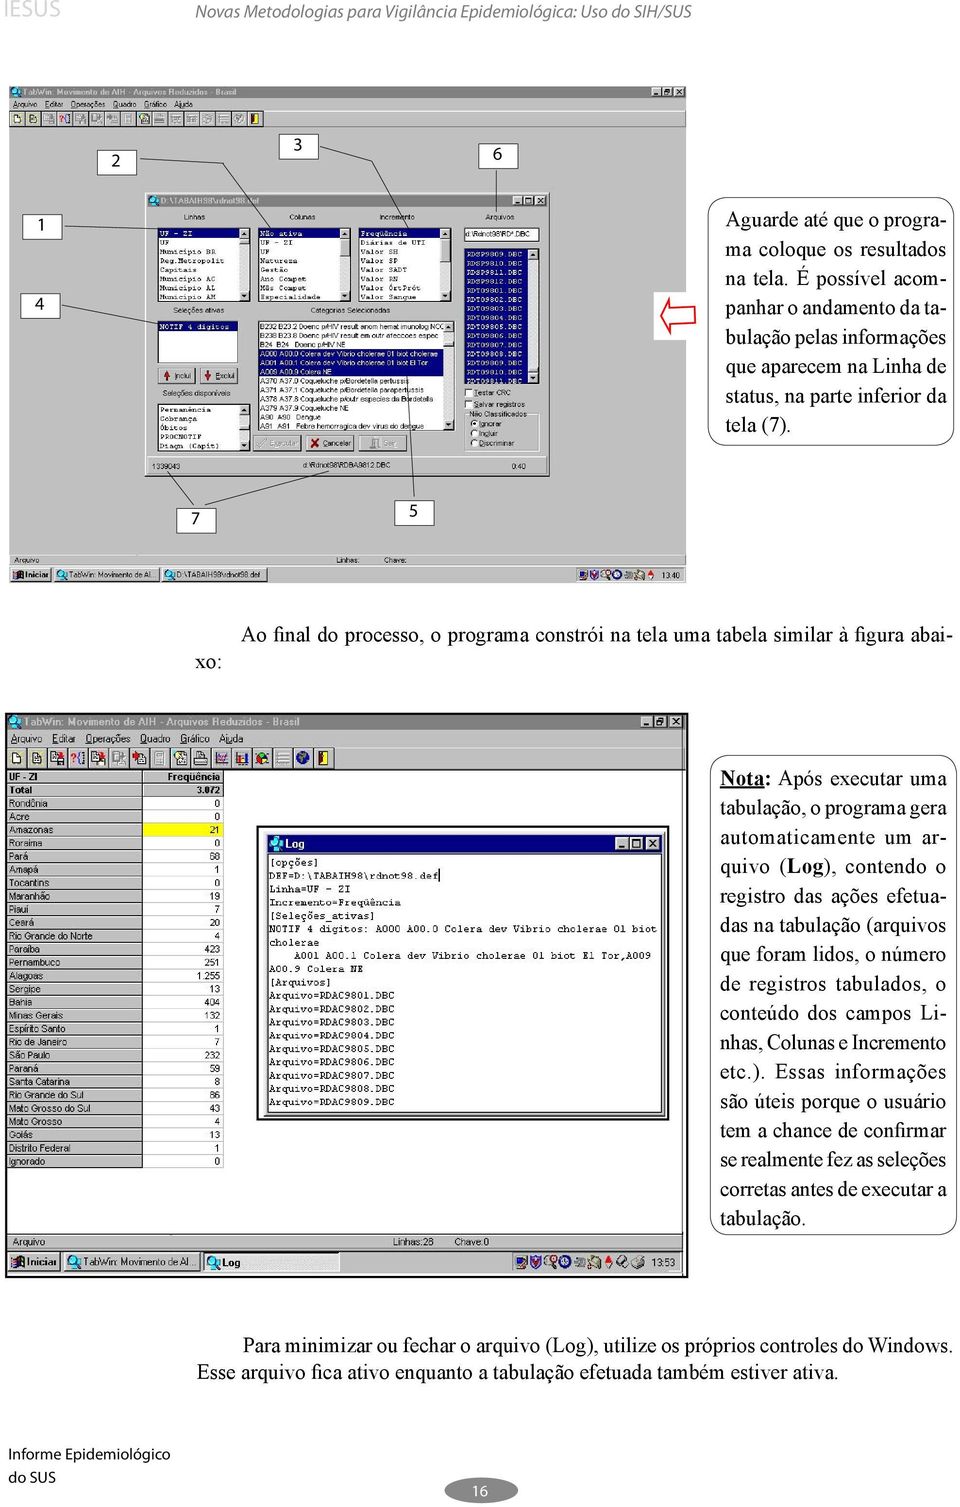 7 5 Ao final do processo, o programa constrói na tela uma tabela similar à figura abaixo: Nota: Após executar uma tabulação, o programa gera automaticamente um arquivo (Log), contendo o registro das